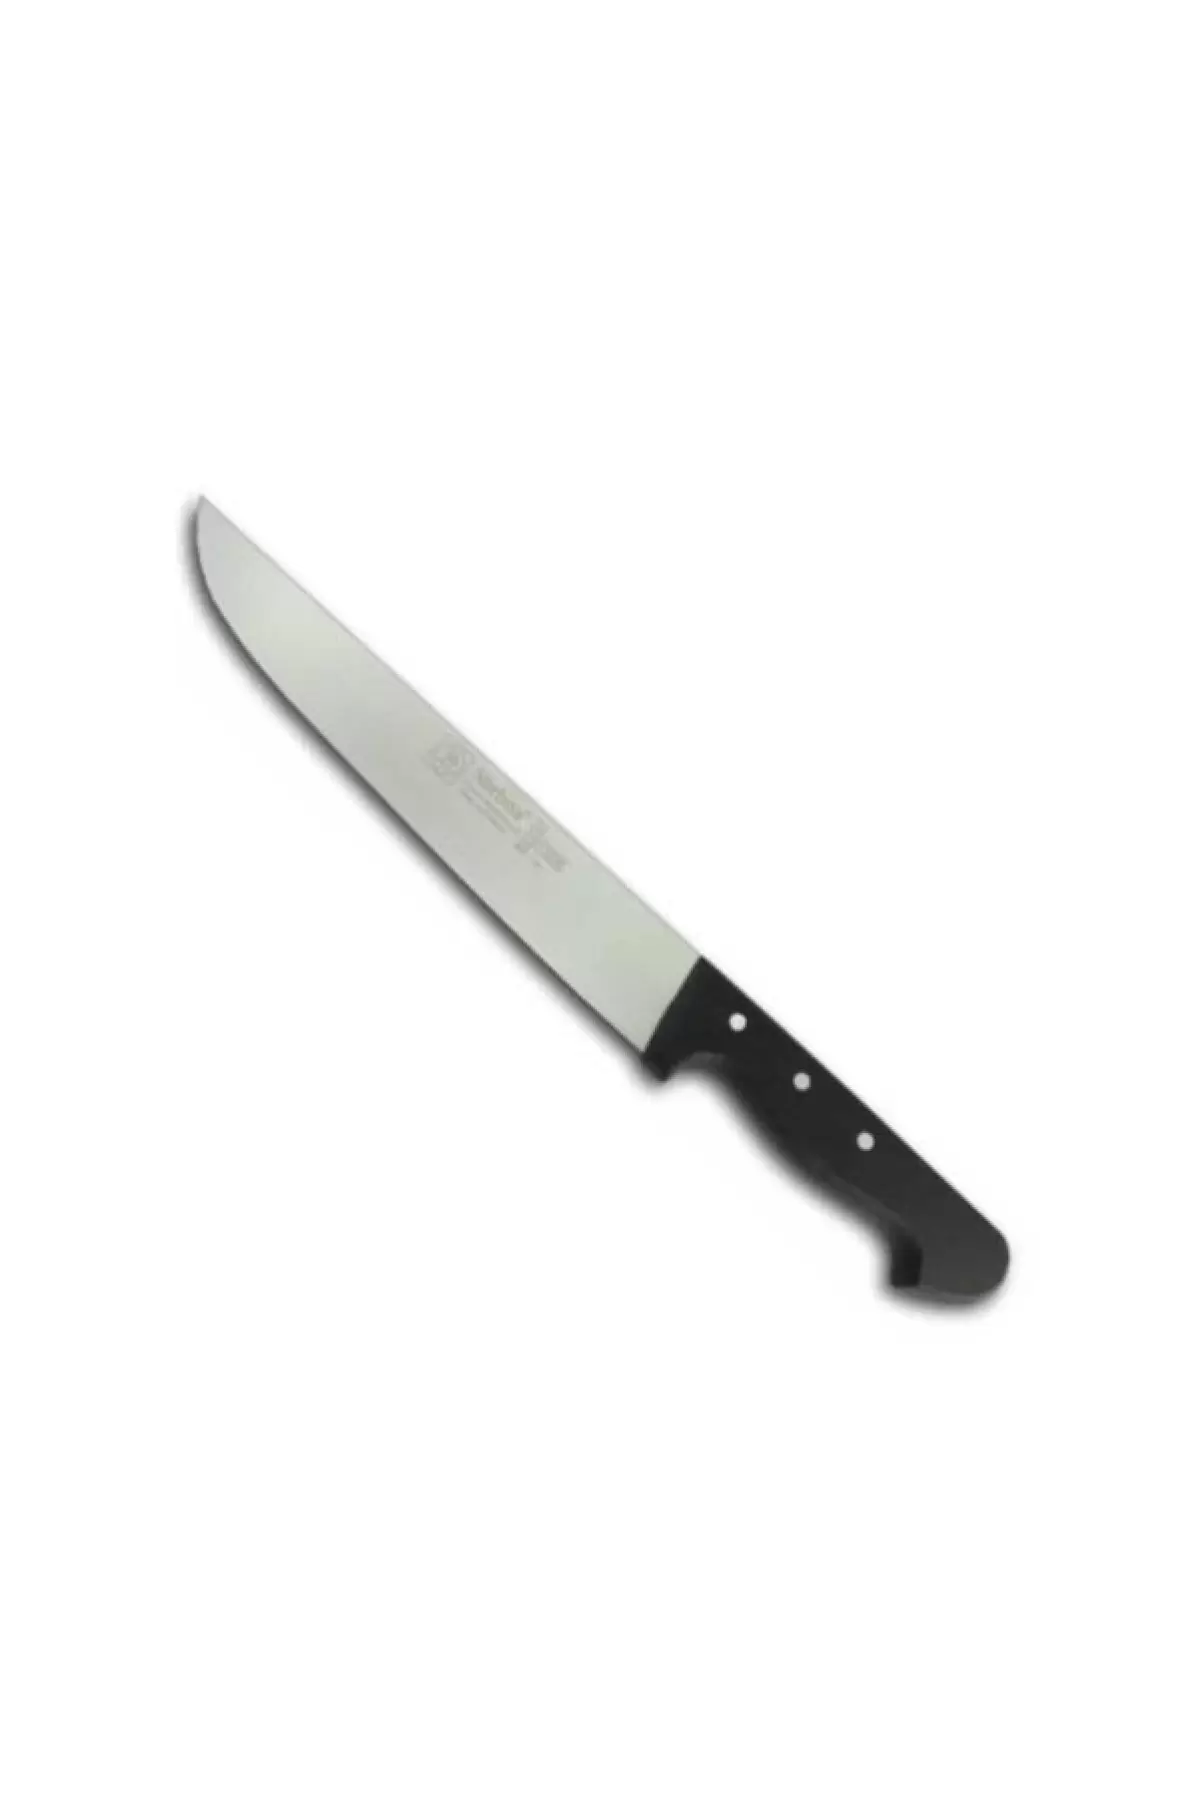 Sürbisa 61050 Mutfak Bıçağı 23 Cm